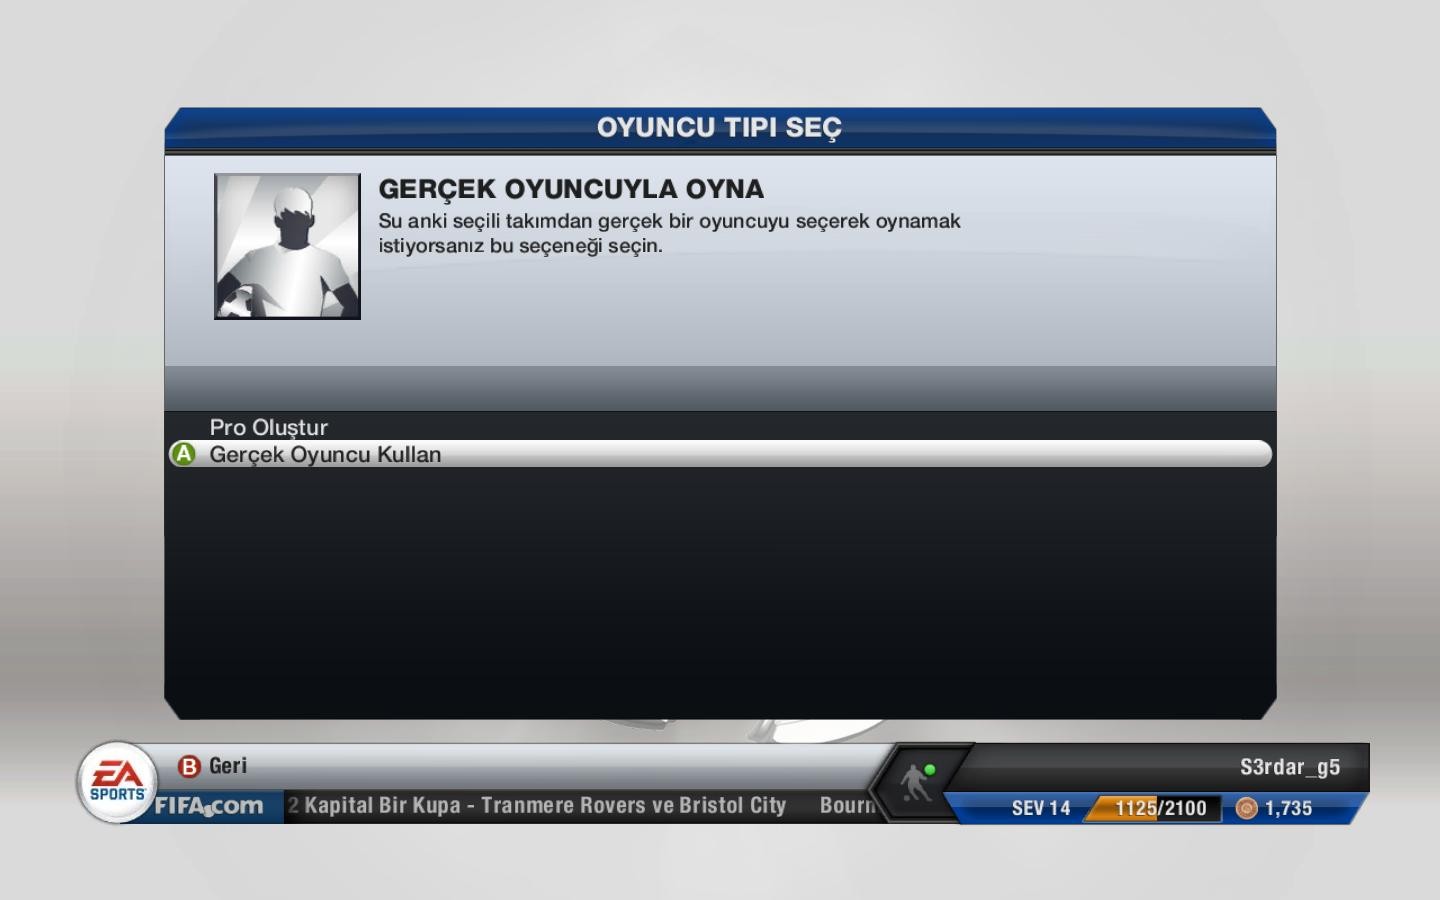  FIFA 13 Türkçe Yama v2.2 (son sürüm)